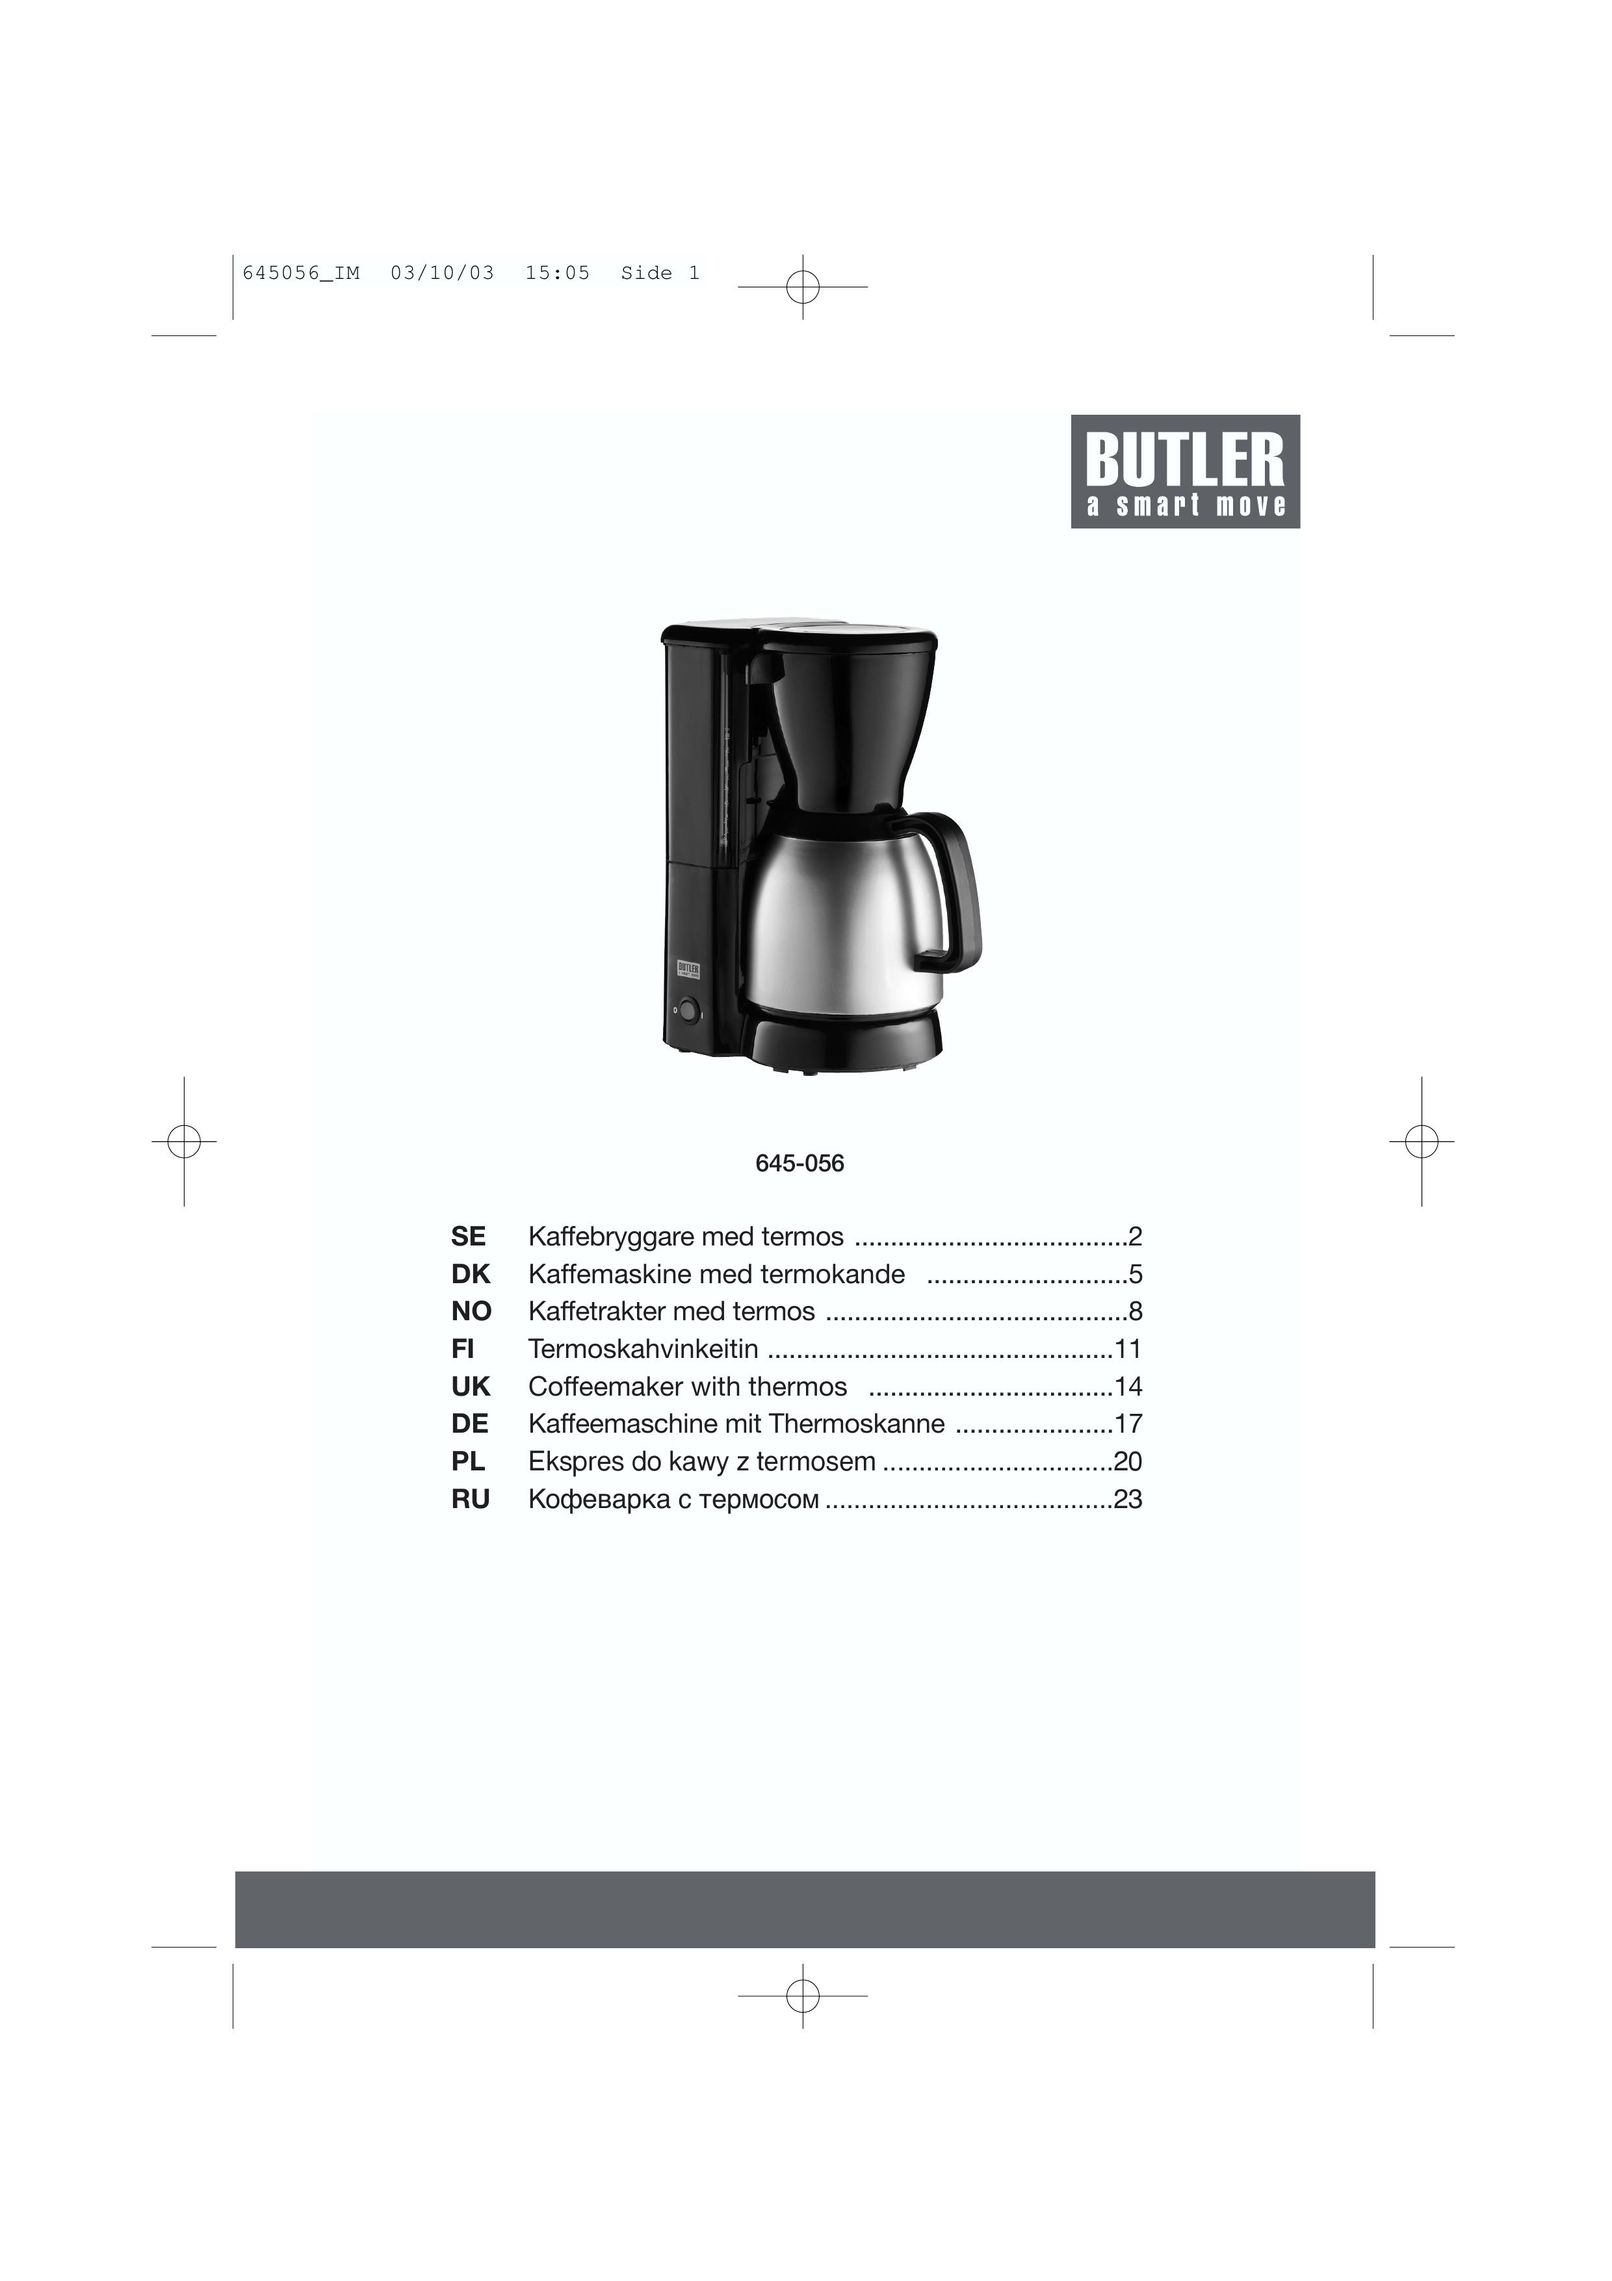 Butler 645-056 Coffeemaker User Manual